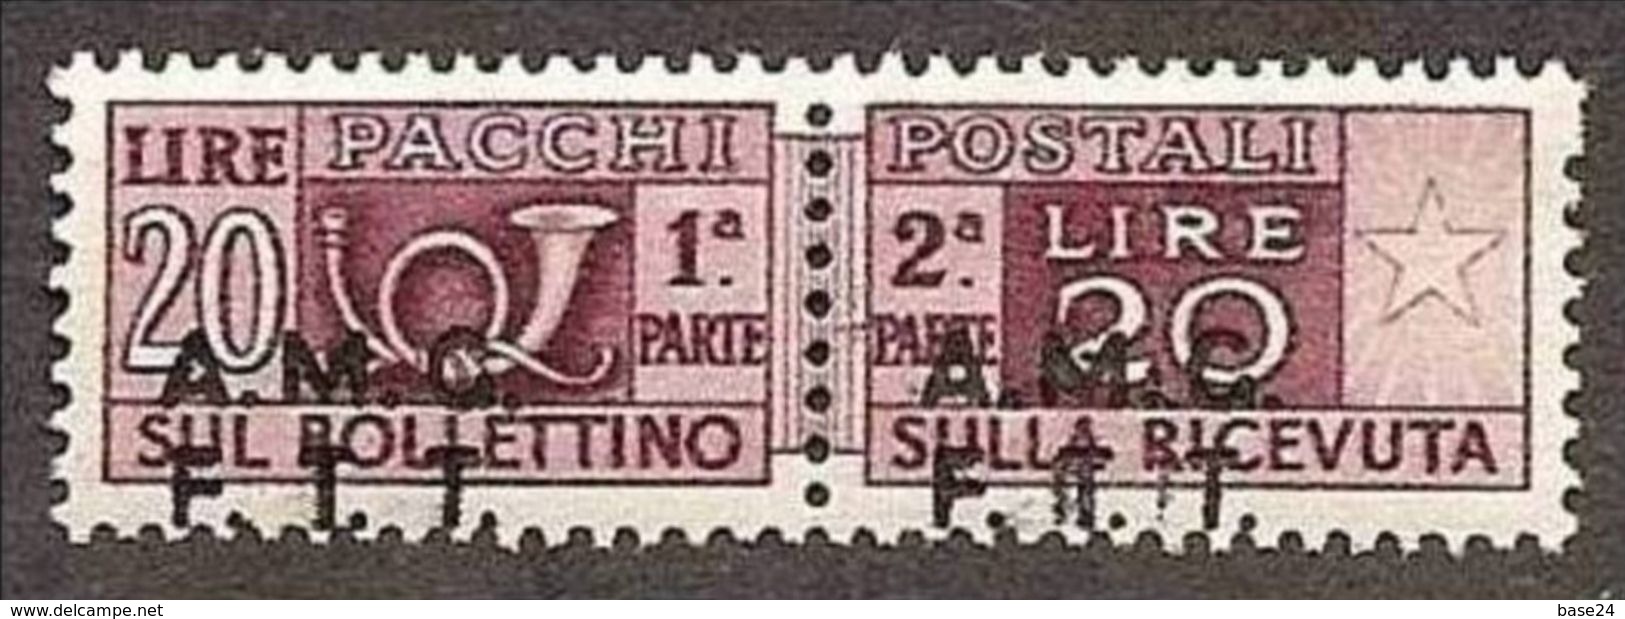 1947 Italia Italy Trieste A  PACCHI POSTALI 20 Lire Bruno Lilla Varietà 7g MNH** Firm.Biondi Parcel Post - Colis Postaux/concession